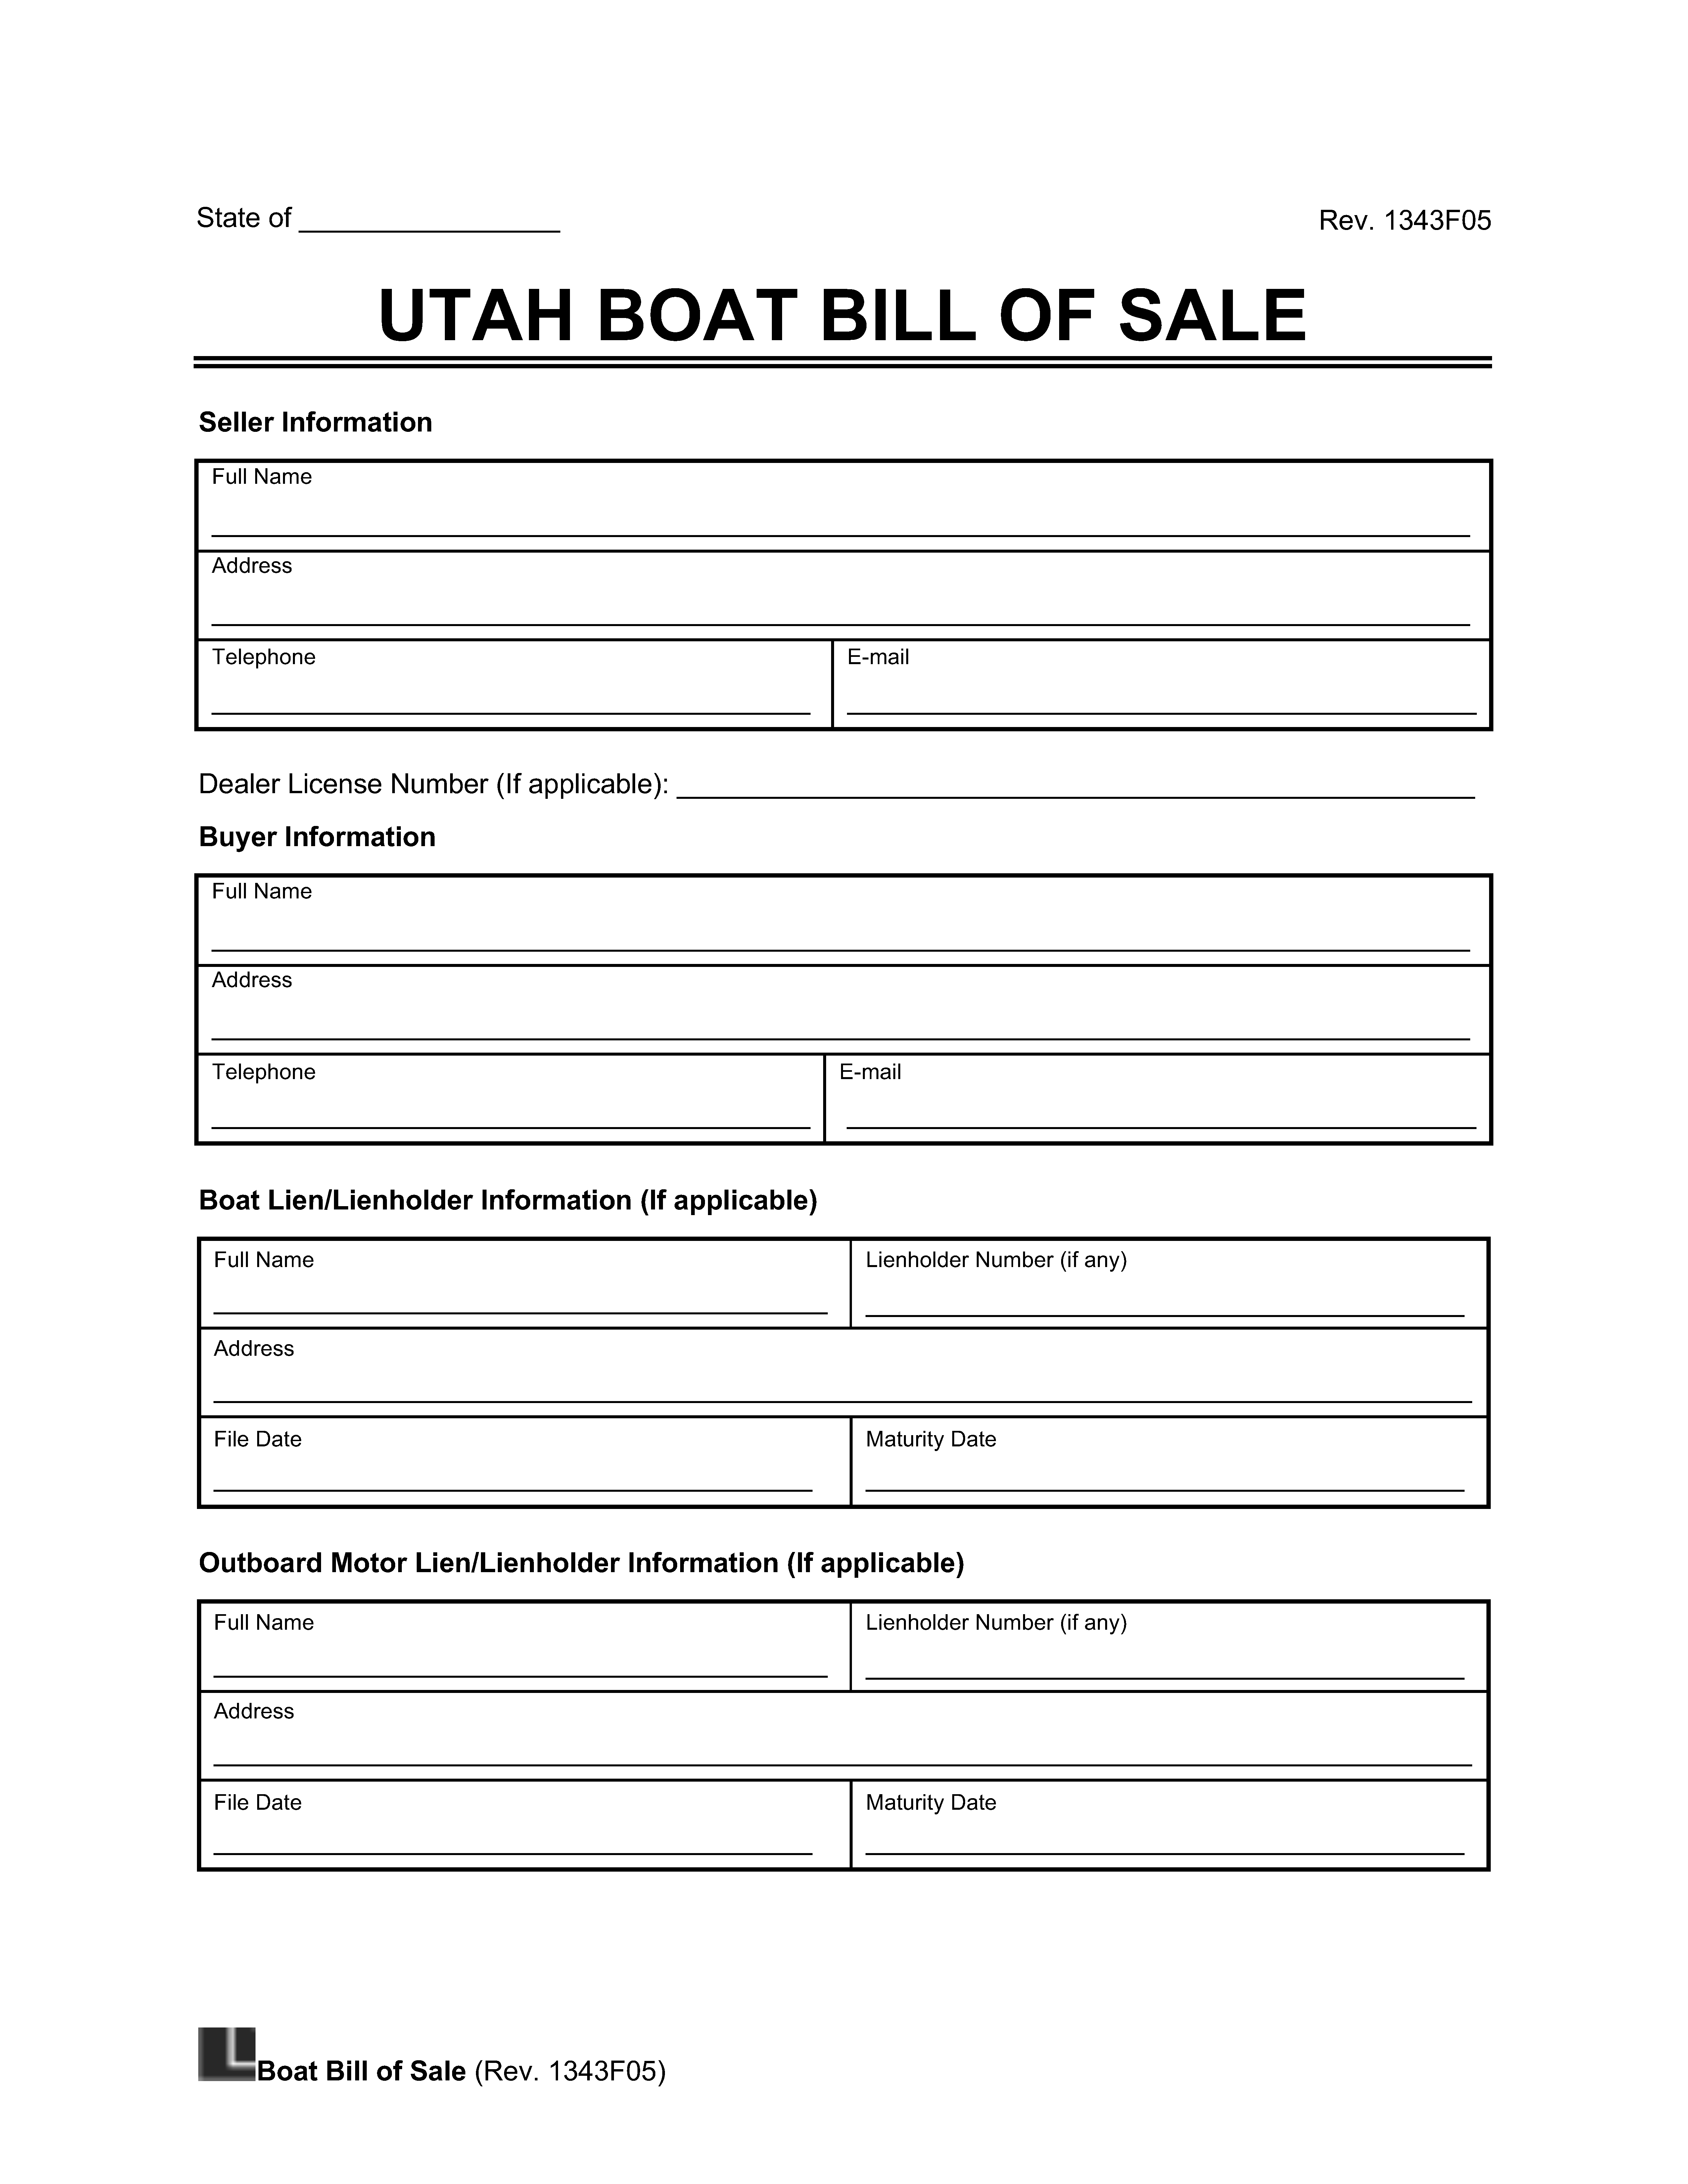 Utah Boat Bill of Sale screenshot